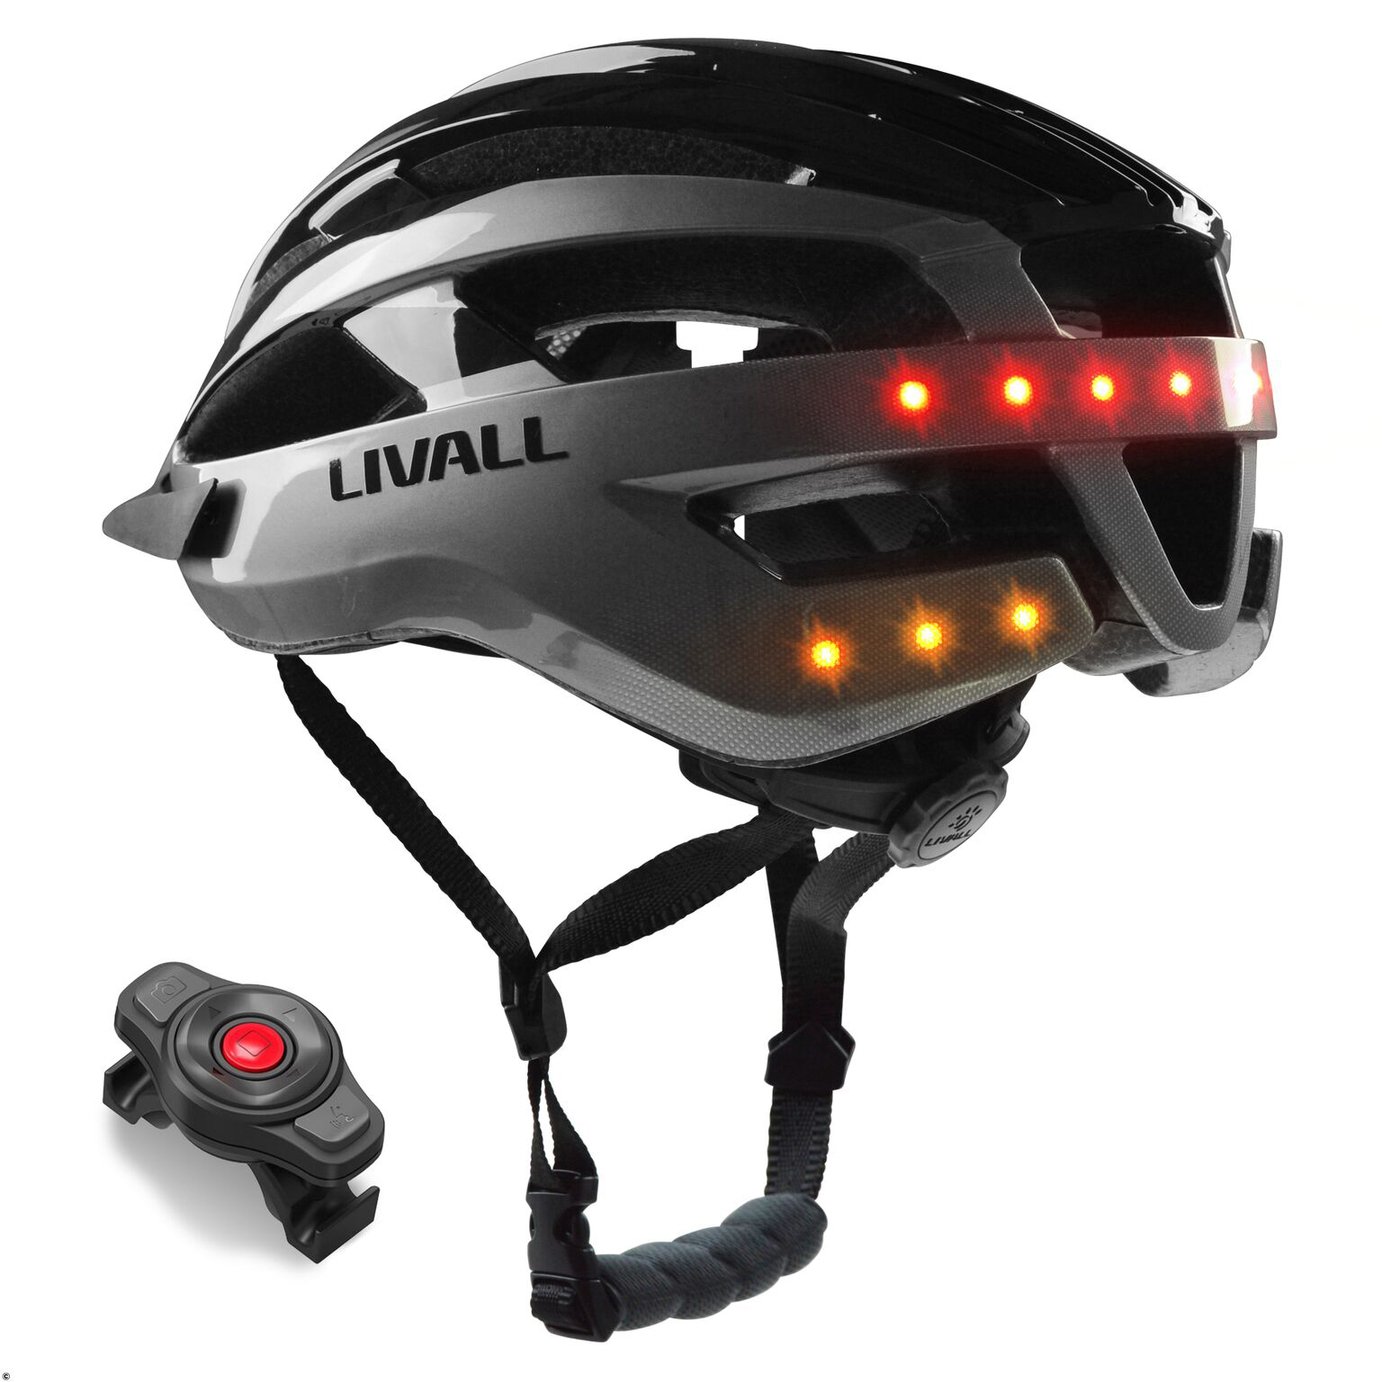 Livall MT1 Unisex Mountain Bike Smart Helmet - 58-62cm